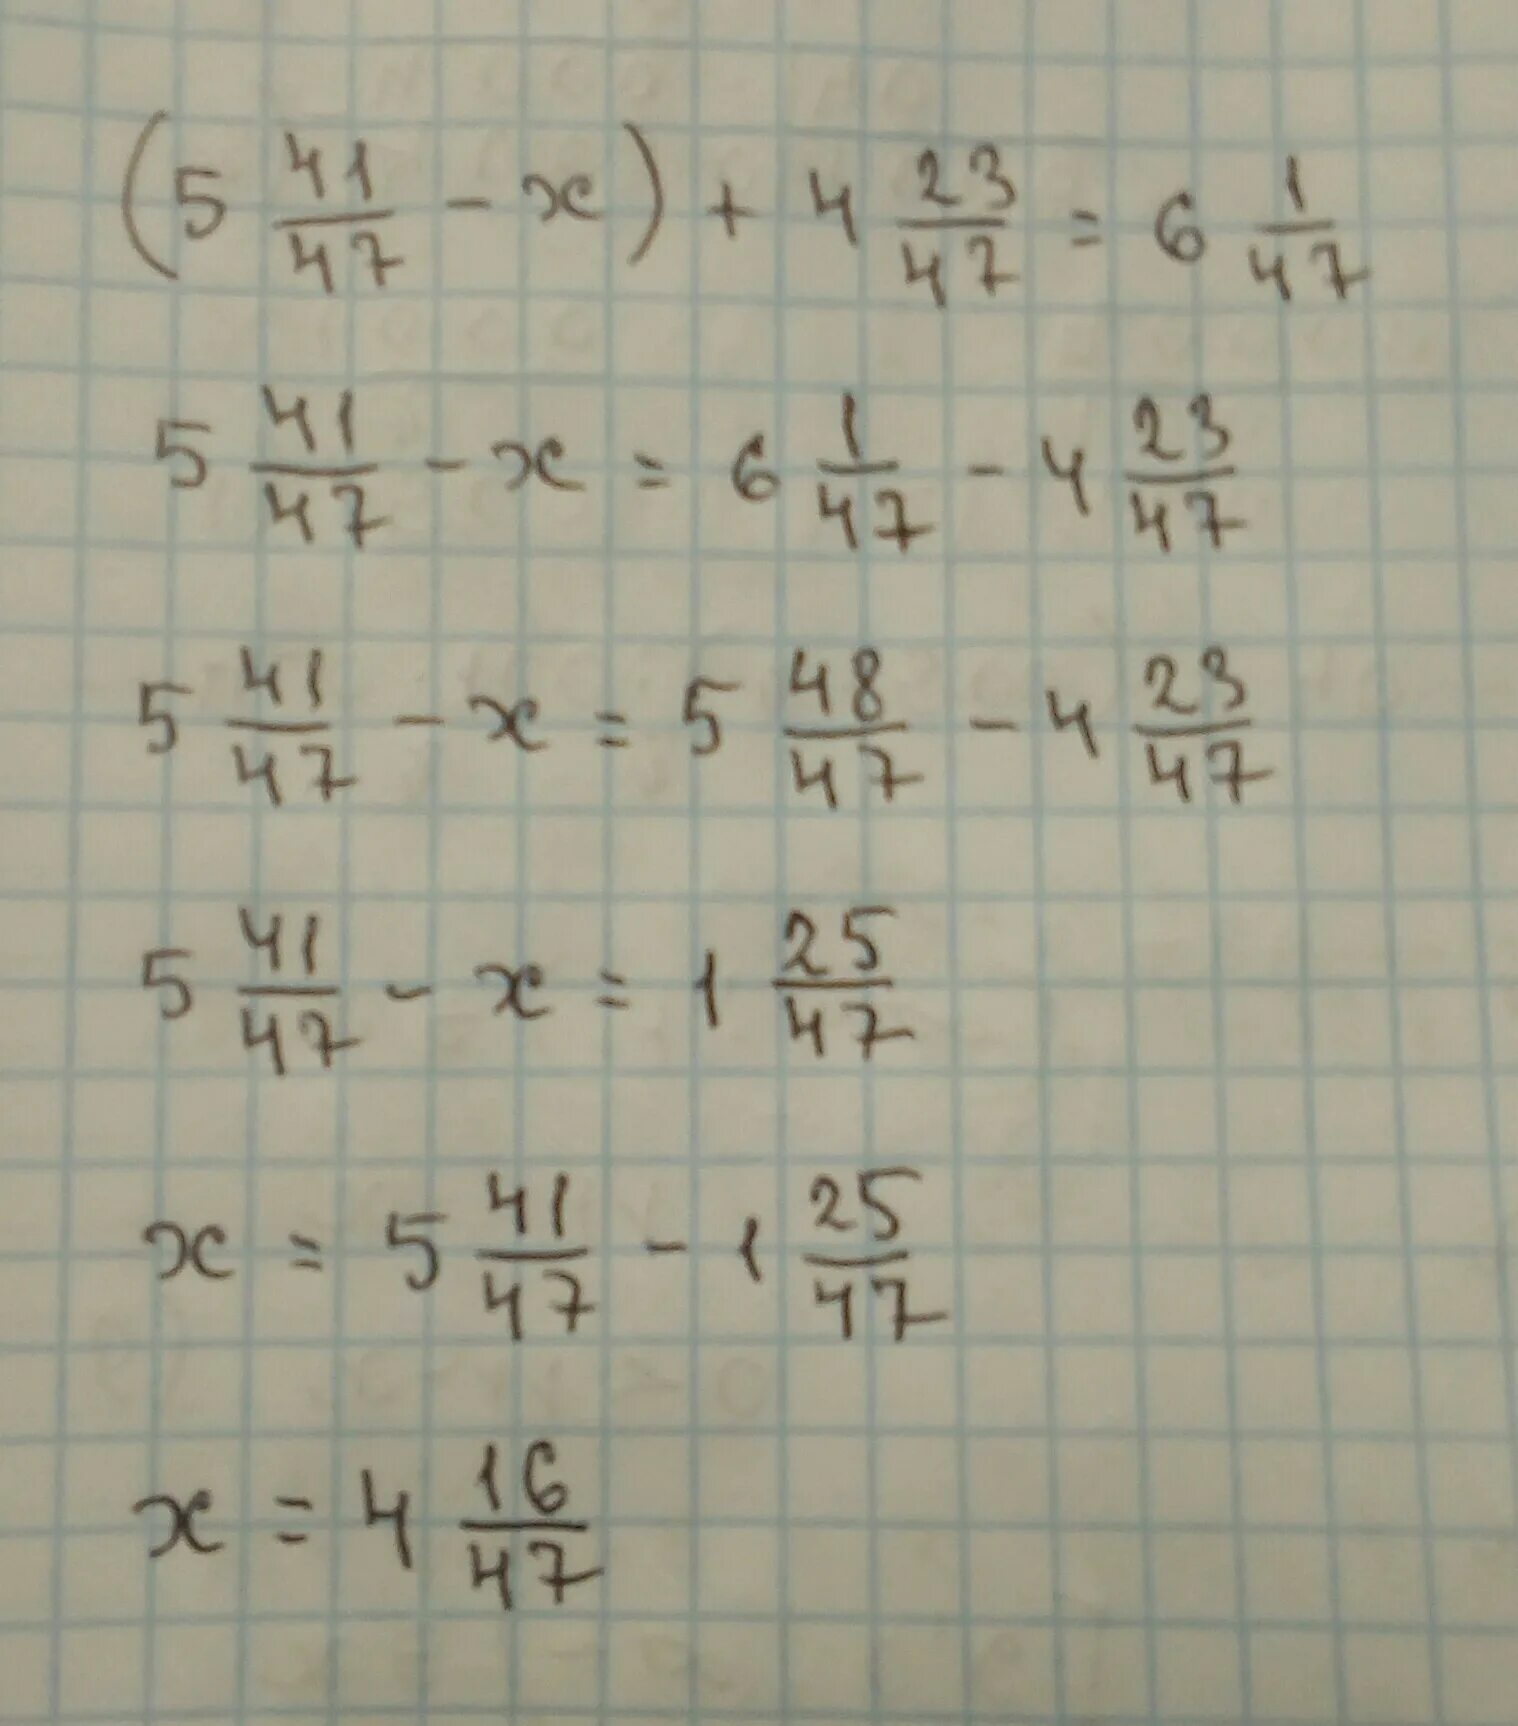 1 47 18 4. 5 44/47-Х +4 23/47 6 1/47. 4,2:1,47 Решение. Пример 47 6. -47x=1.